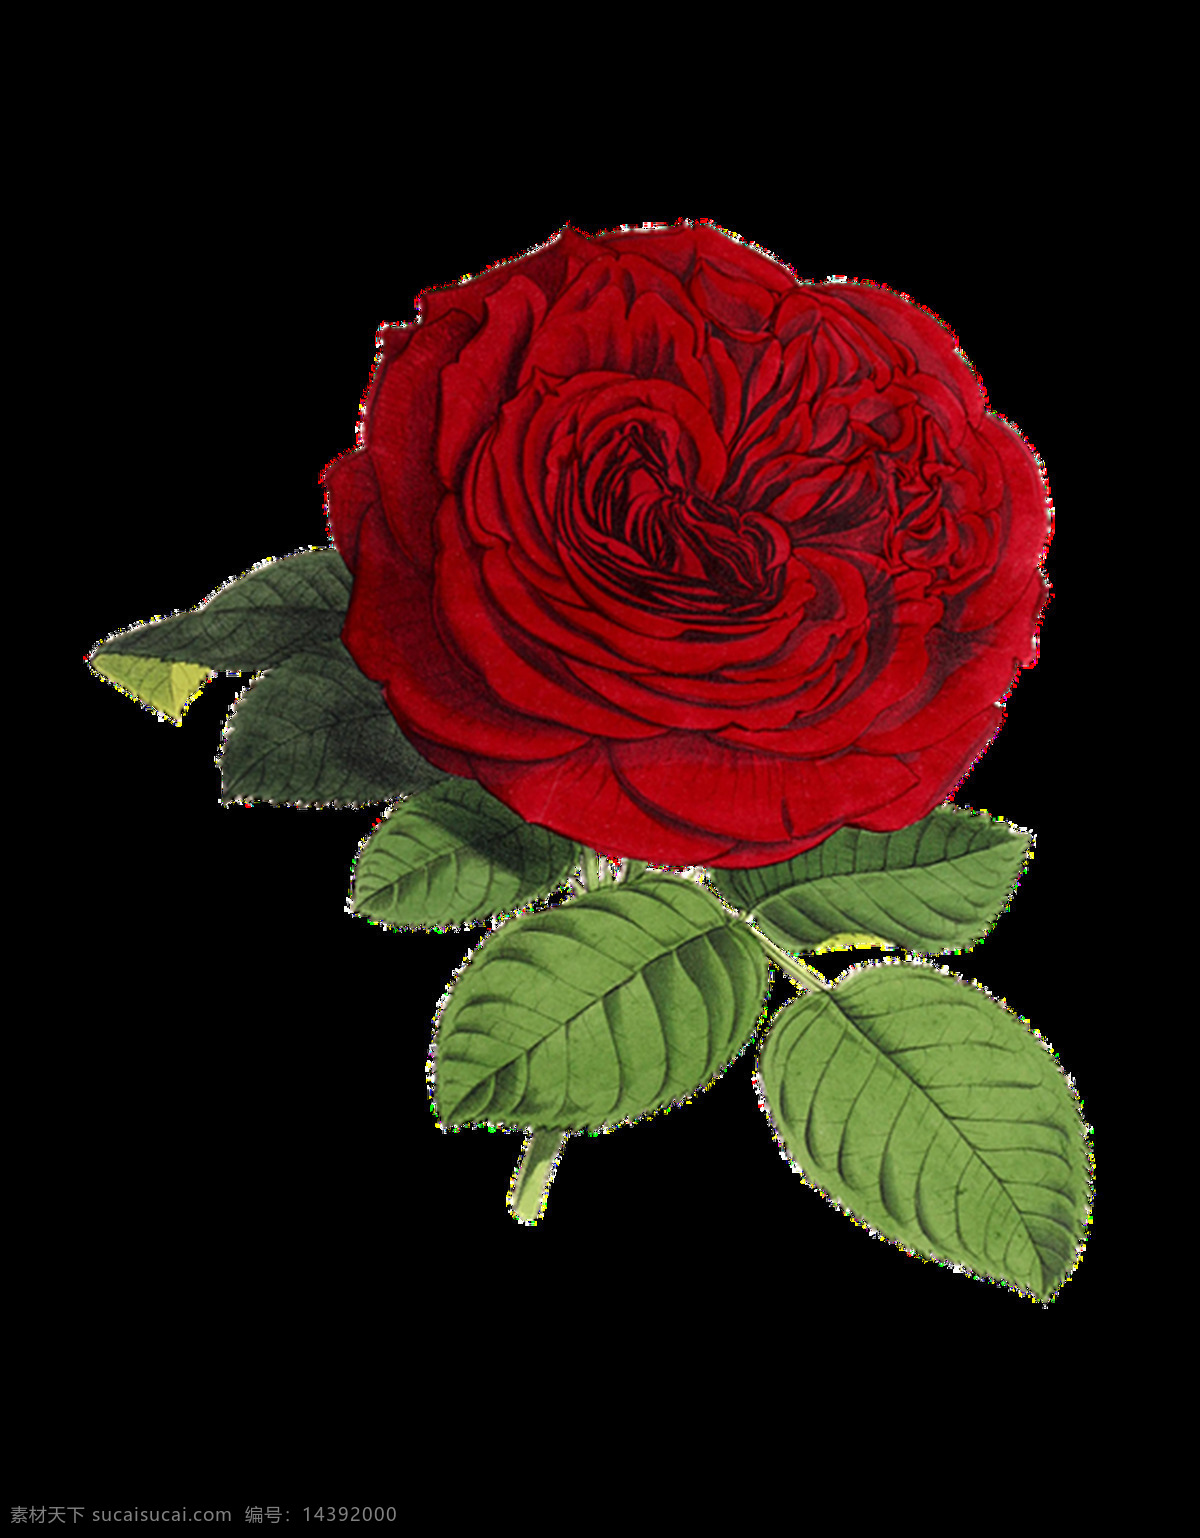 玫瑰图片 玫瑰 白玫瑰 红玫瑰 蓝玫瑰 玫瑰花 黄玫瑰 鲜花 花朵 花 植物 花瓣 花卉 png图 透明图 免扣图 透明背景 透明底 抠图 生物世界 花草